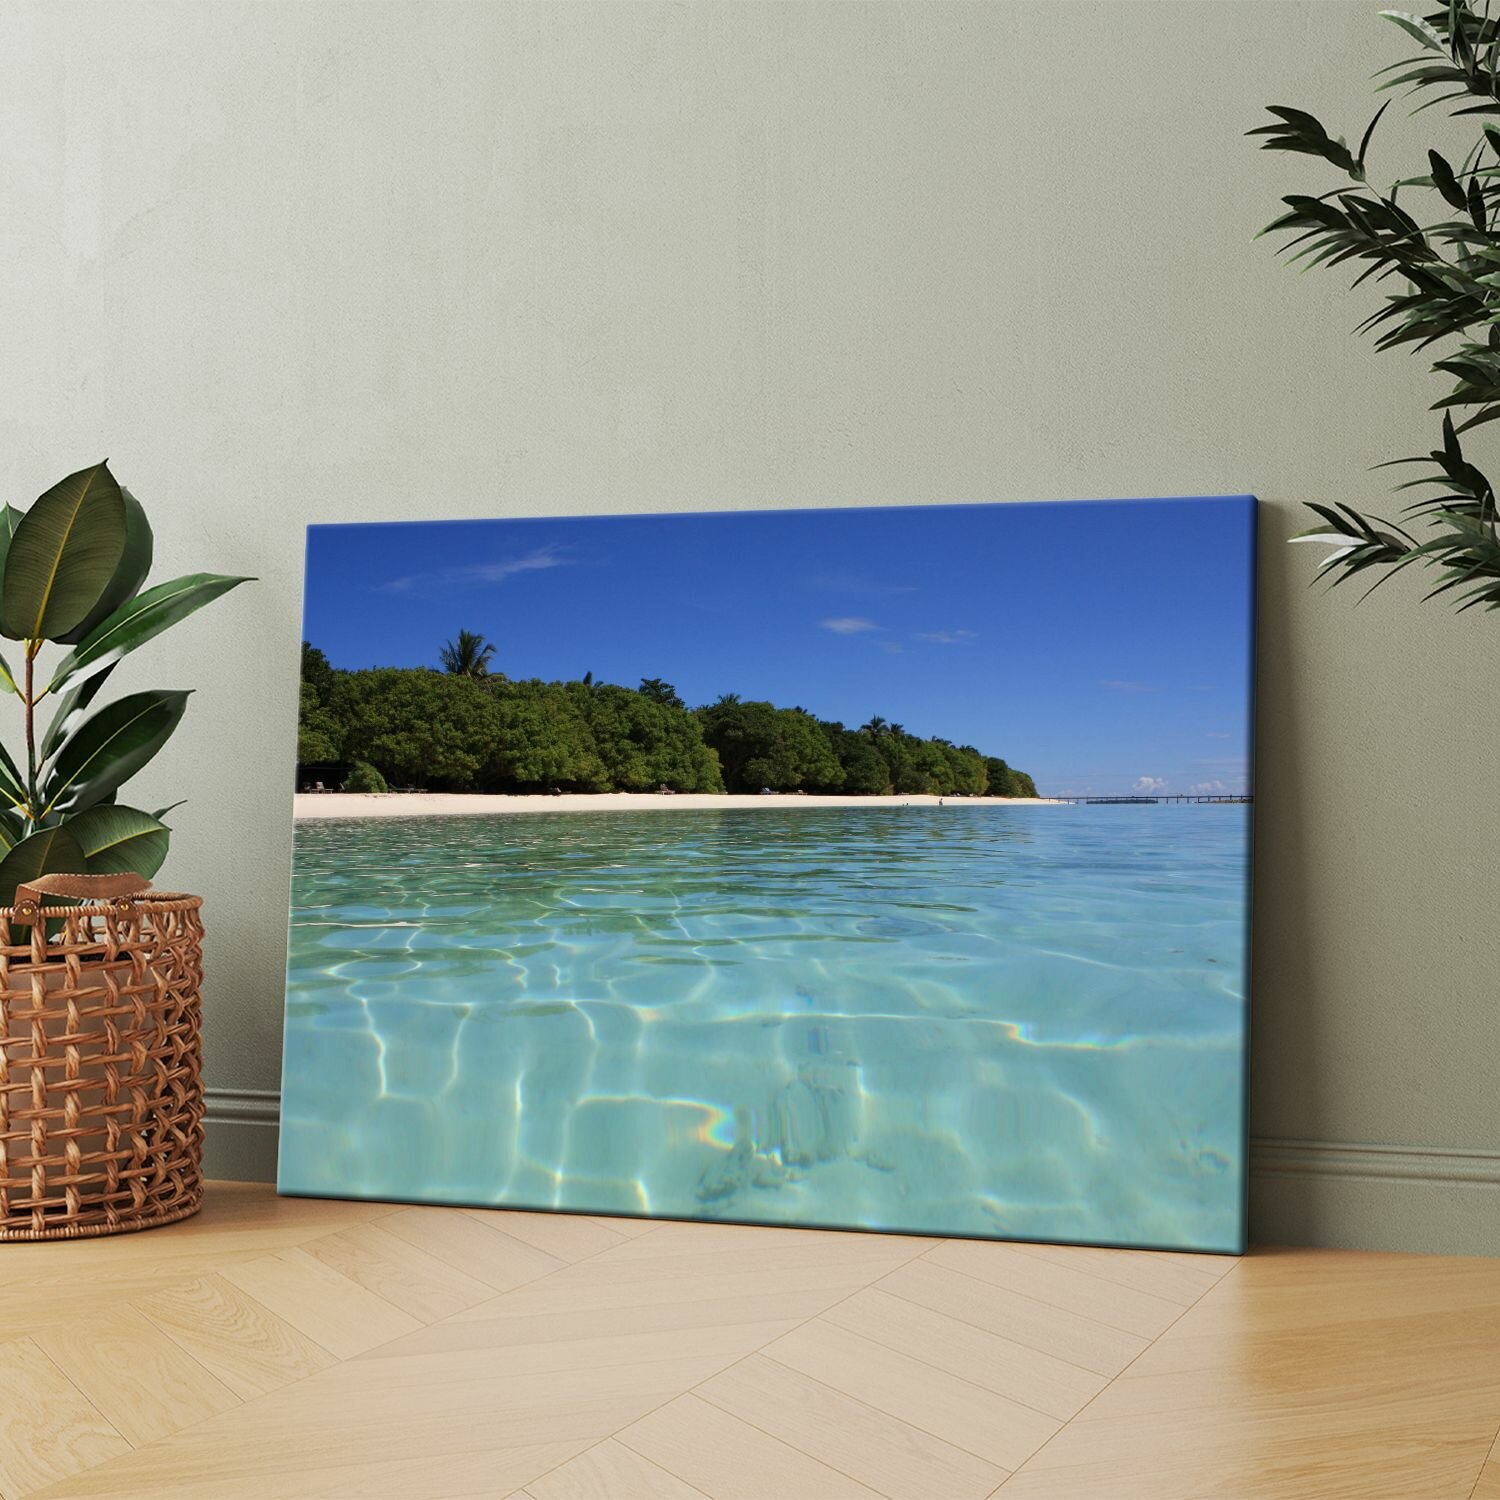 Картина на холсте (Природа лето море пляж тропики) 20x30 см. Интерьерная, на стену.